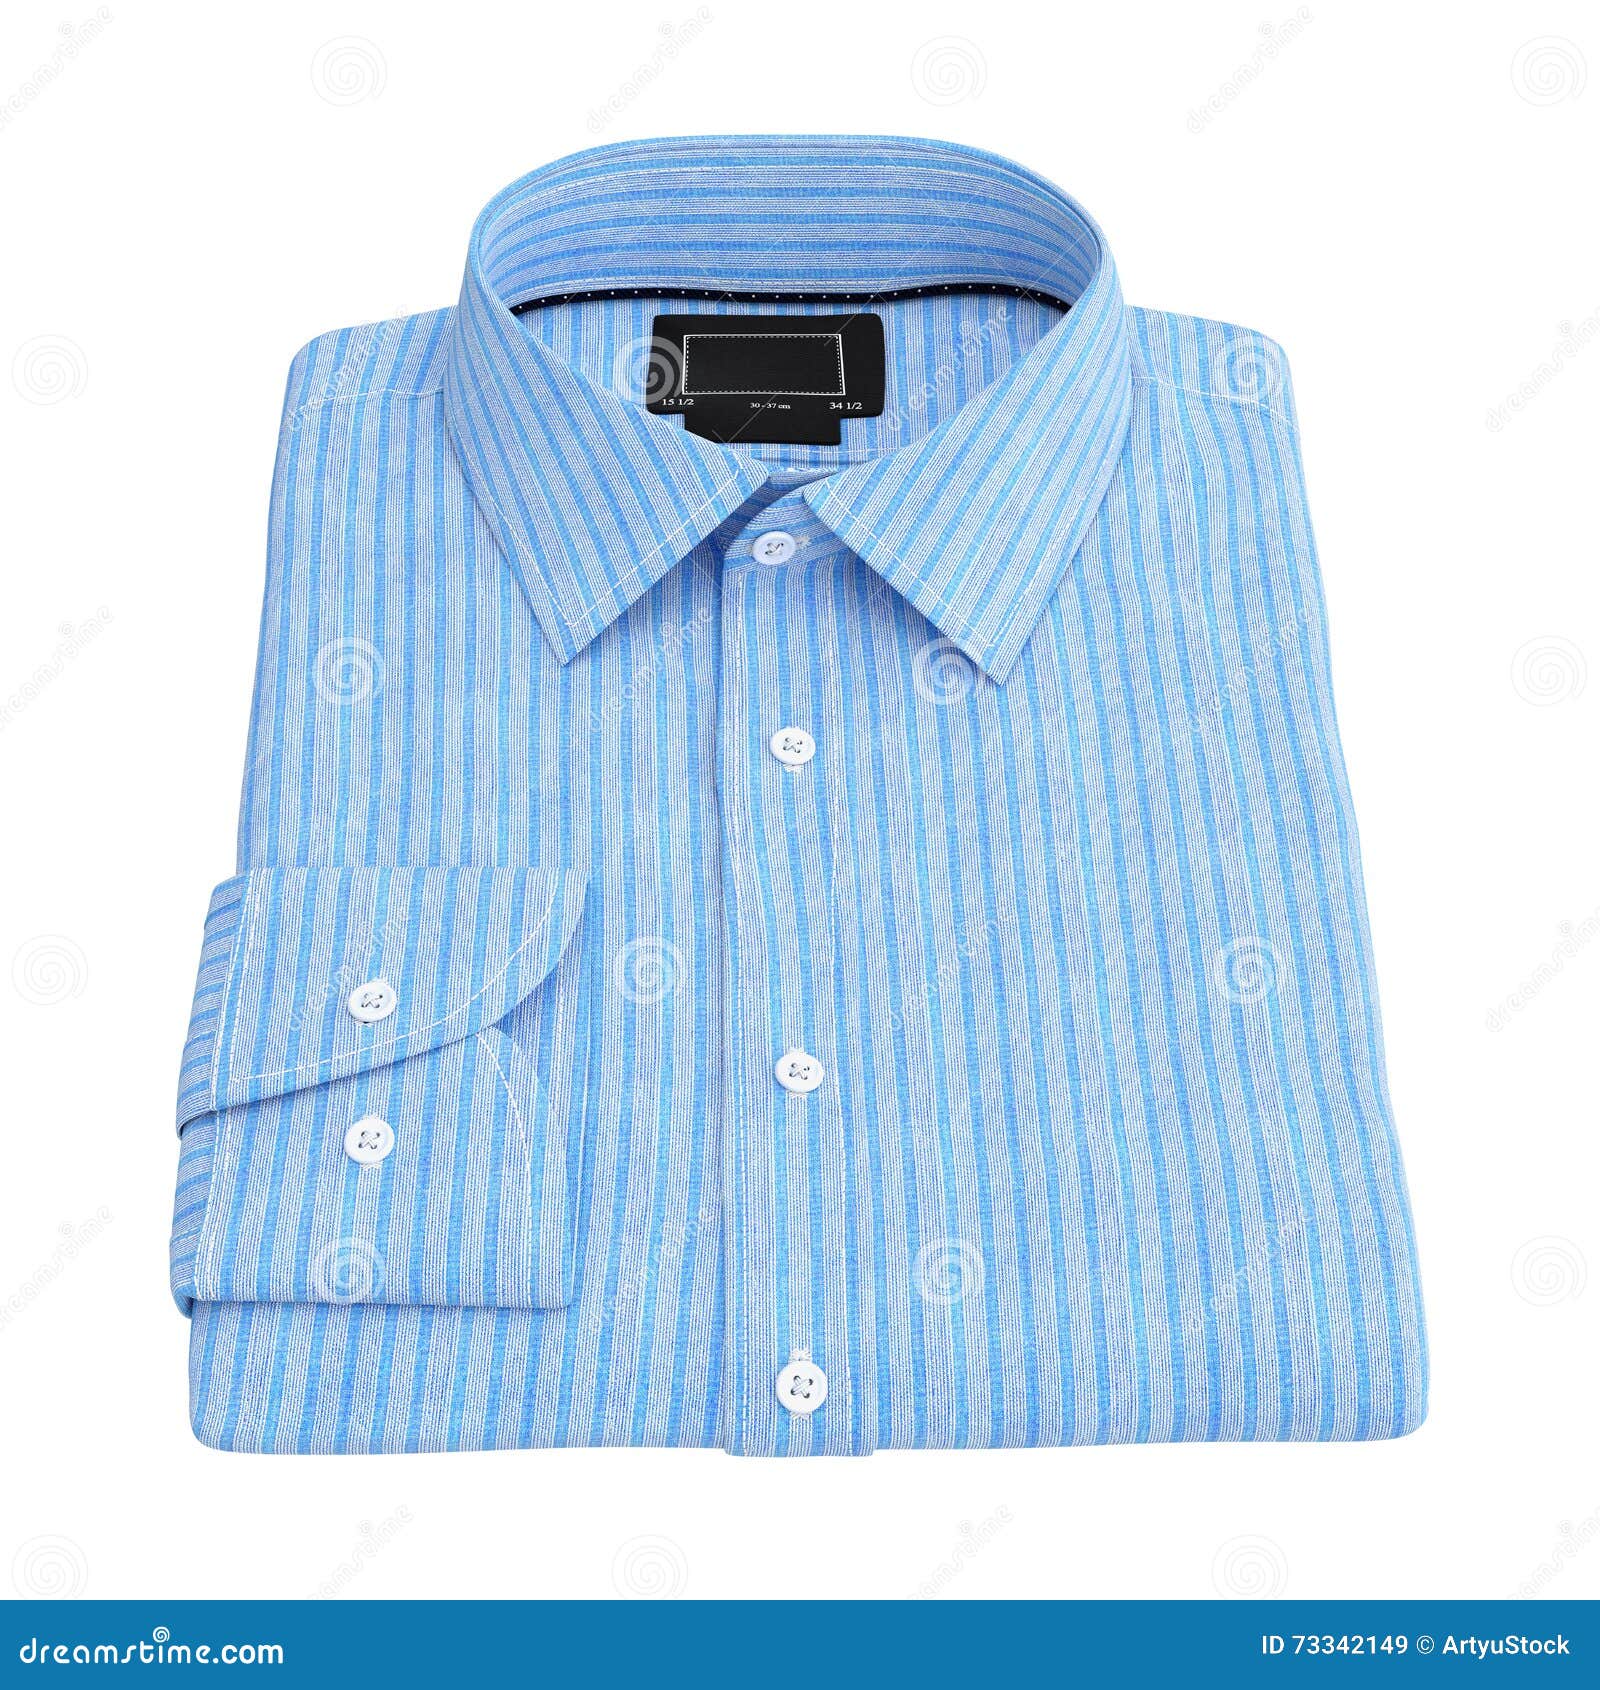 Men s folded shirt stock illustration. Illustration of packed - 73342149